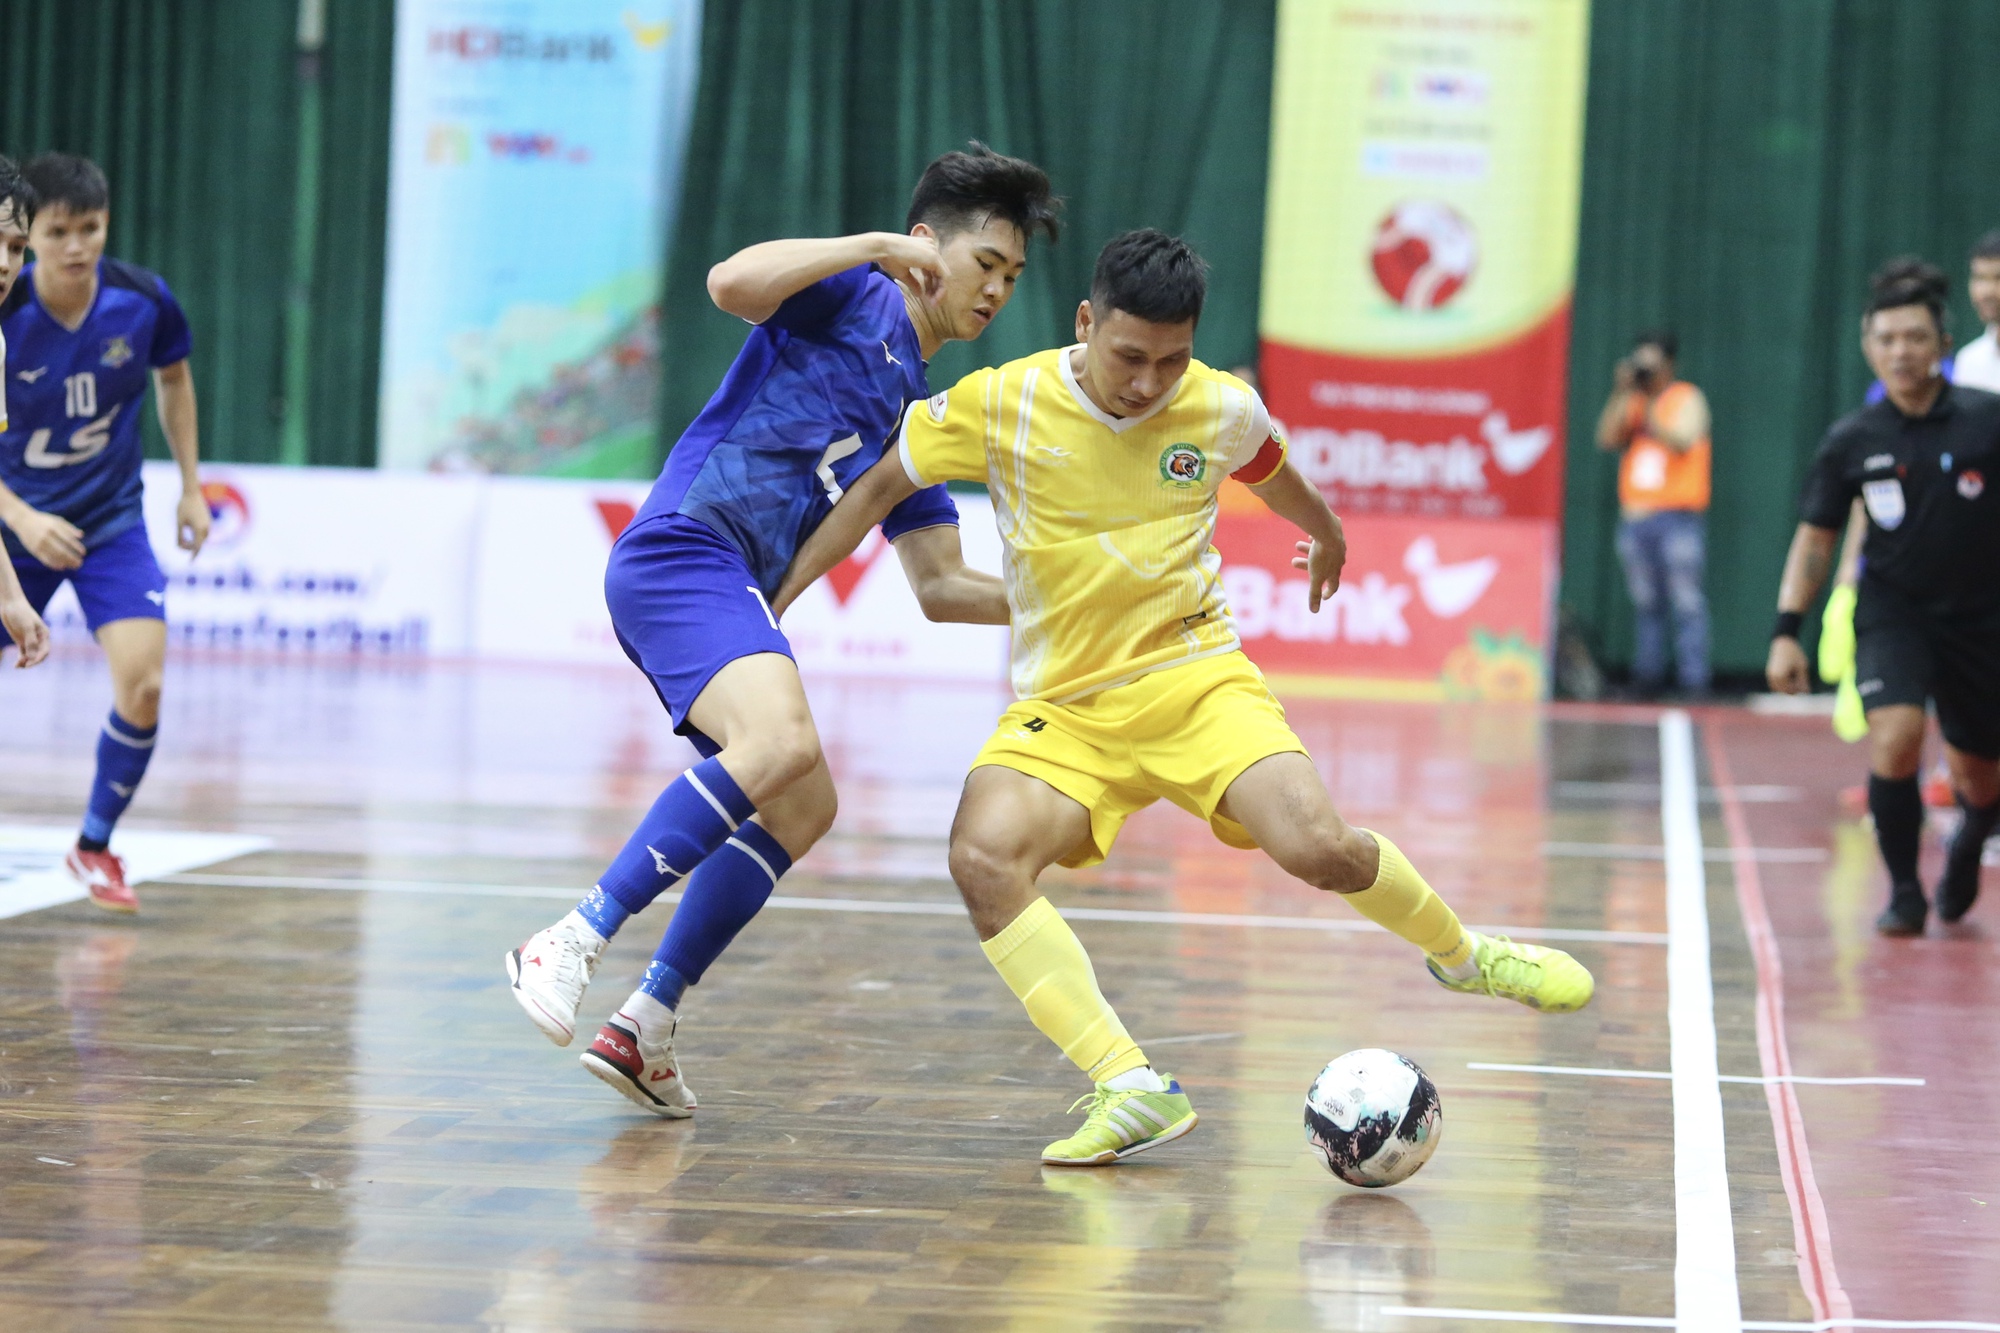 CLB Thái Sơn Nam tiếp tục trở thành cựu vương giải futsal quốc nội - Ảnh 3.